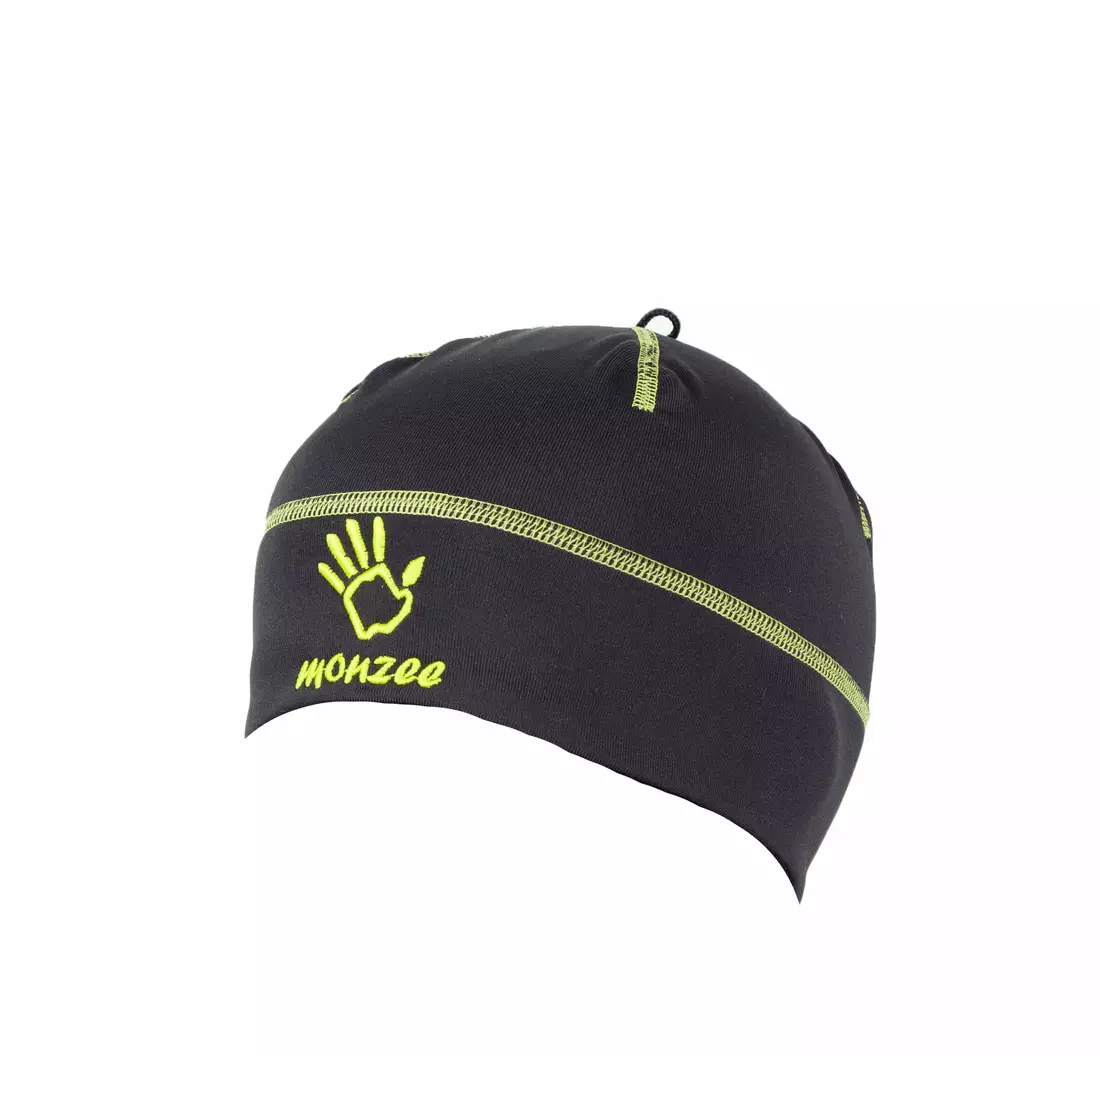 MONZEE - športová čiapka 14/01 C. čierno-zelená